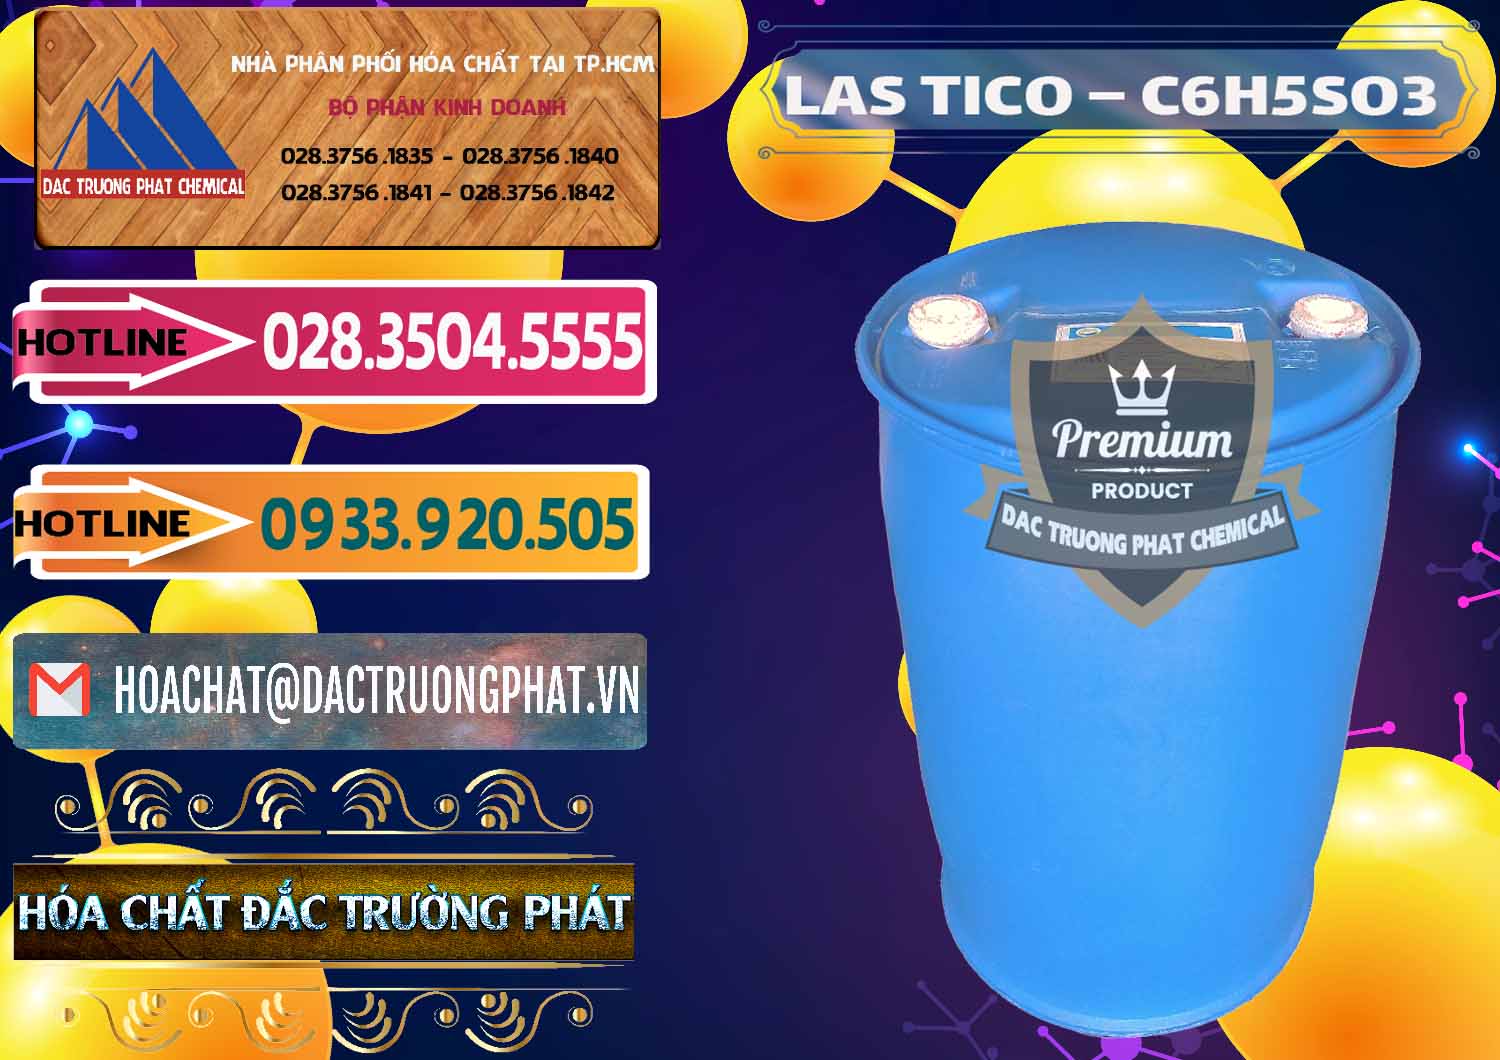 Chuyên bán - phân phối Chất tạo bọt Las H Tico Việt Nam - 0190 - Công ty cung ứng ( bán ) hóa chất tại TP.HCM - dactruongphat.vn